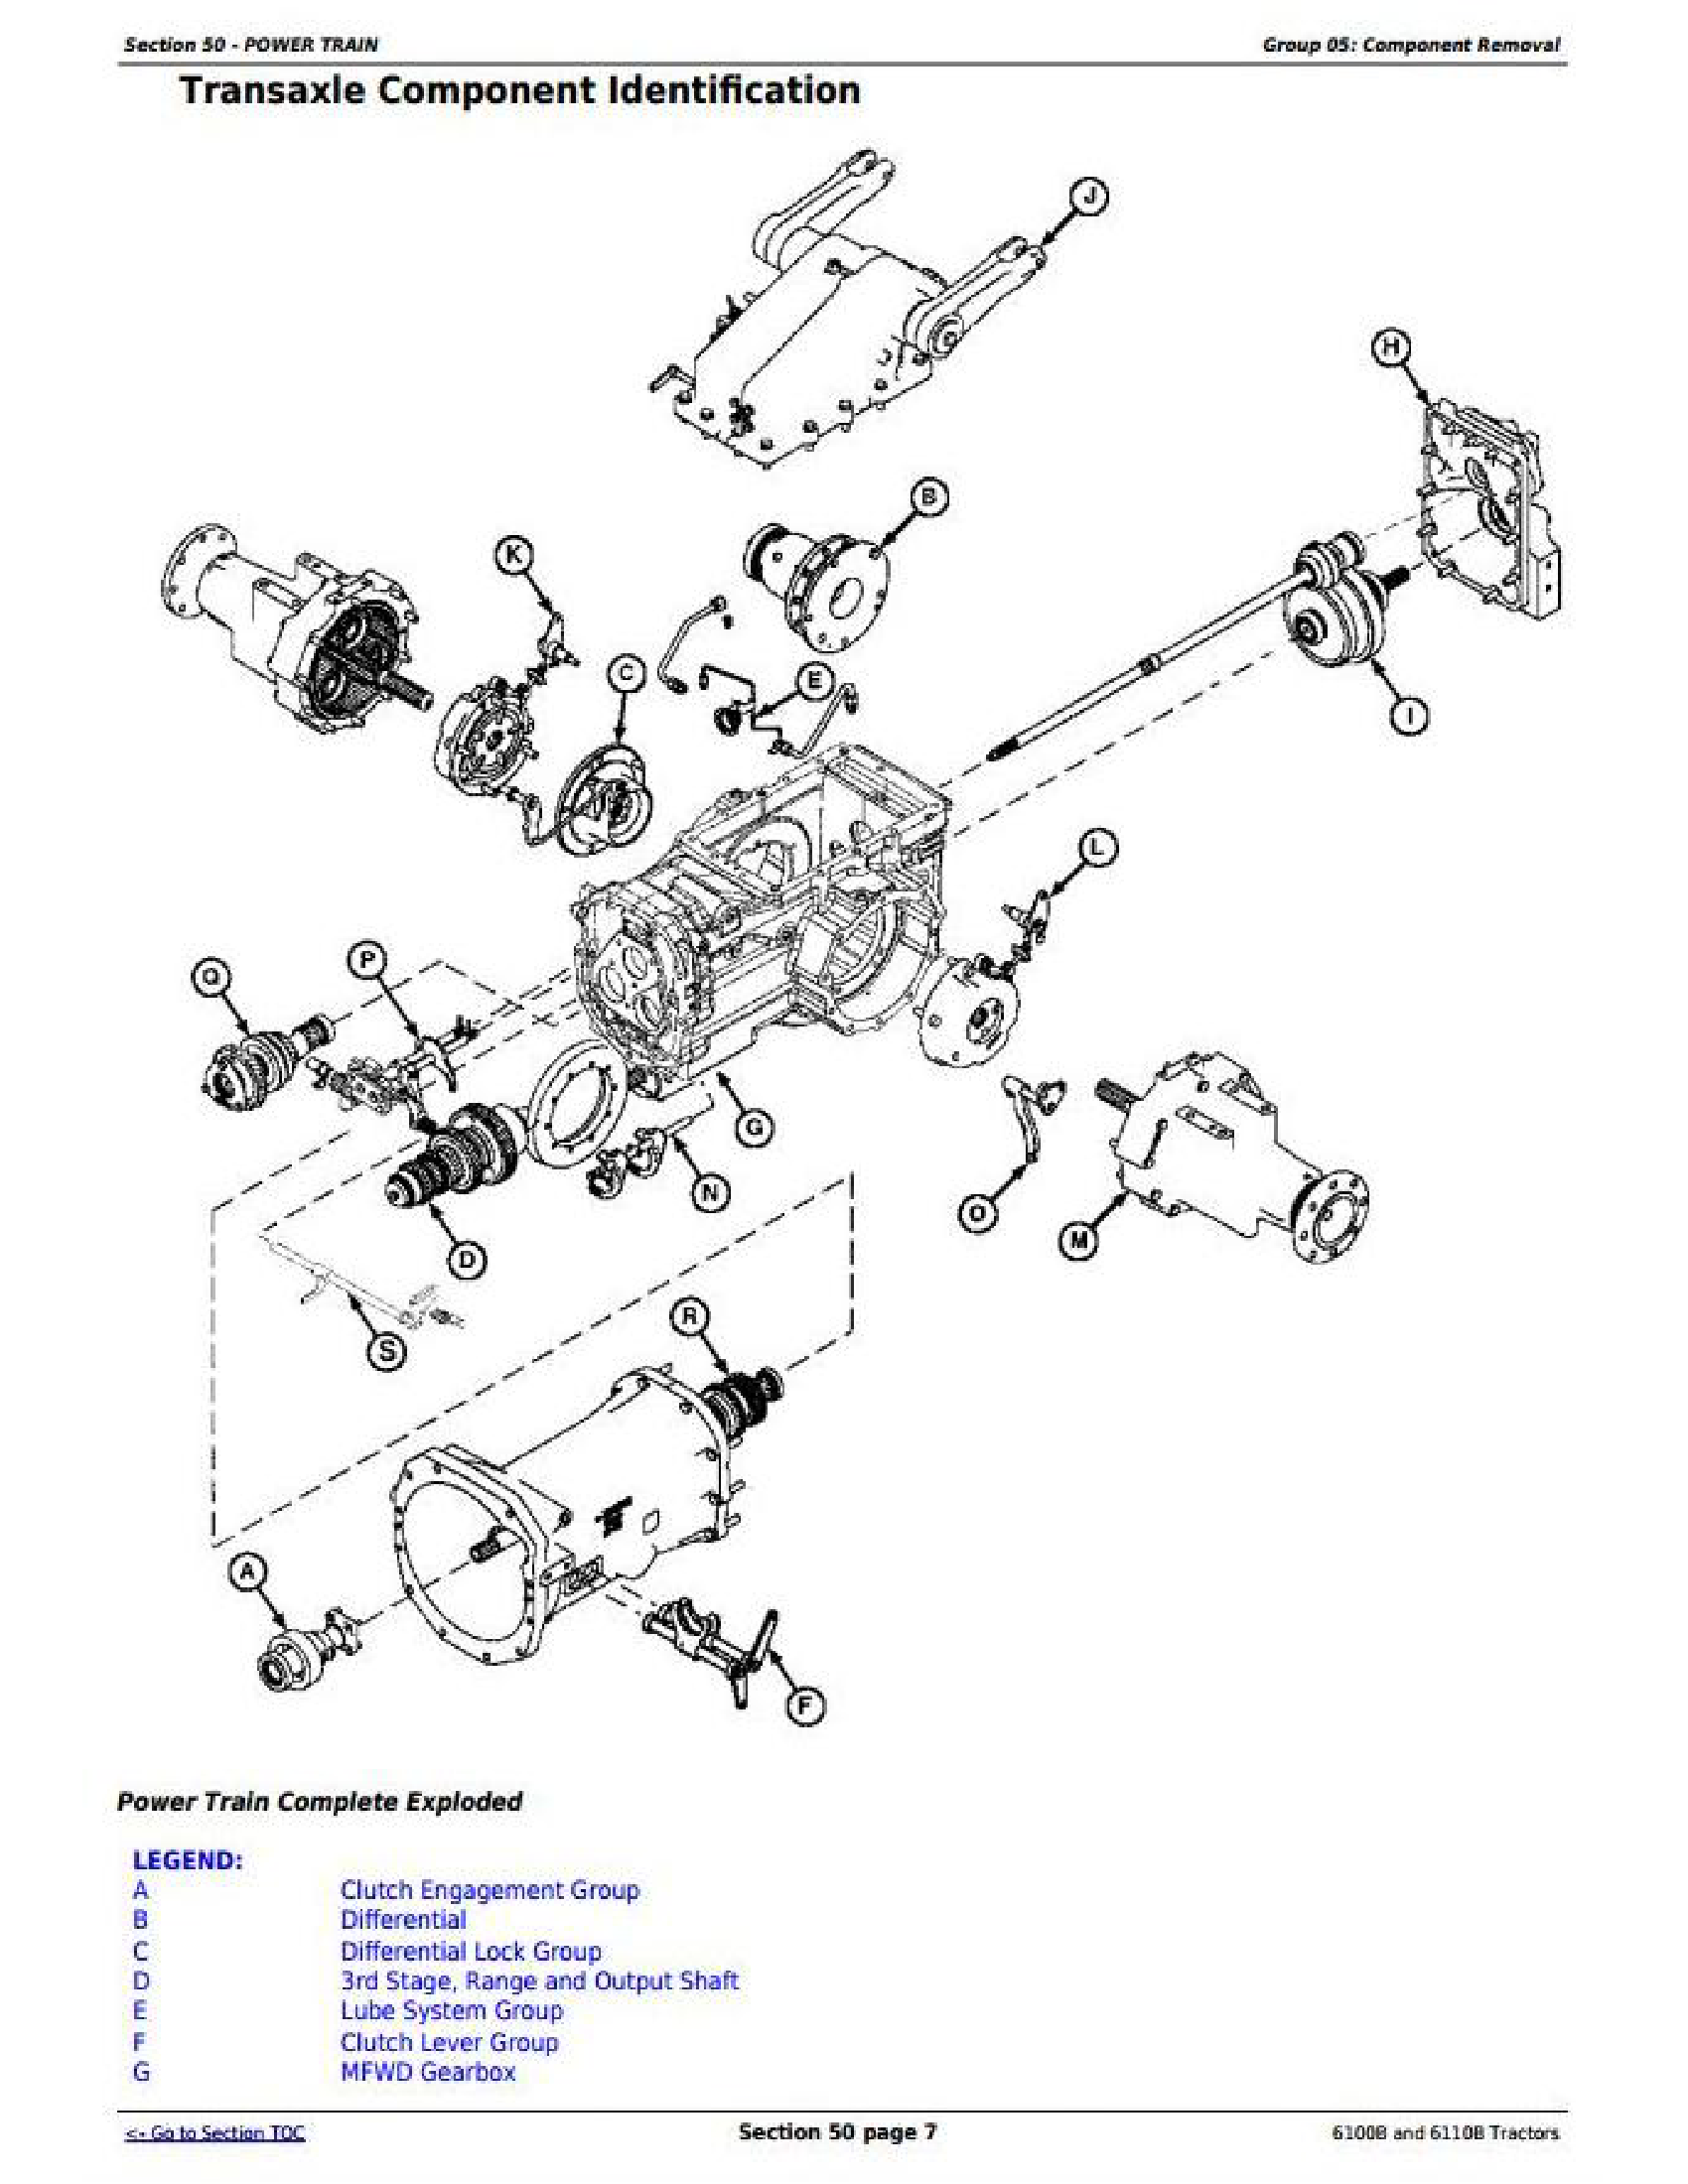 John Deere 6910S manual pdf